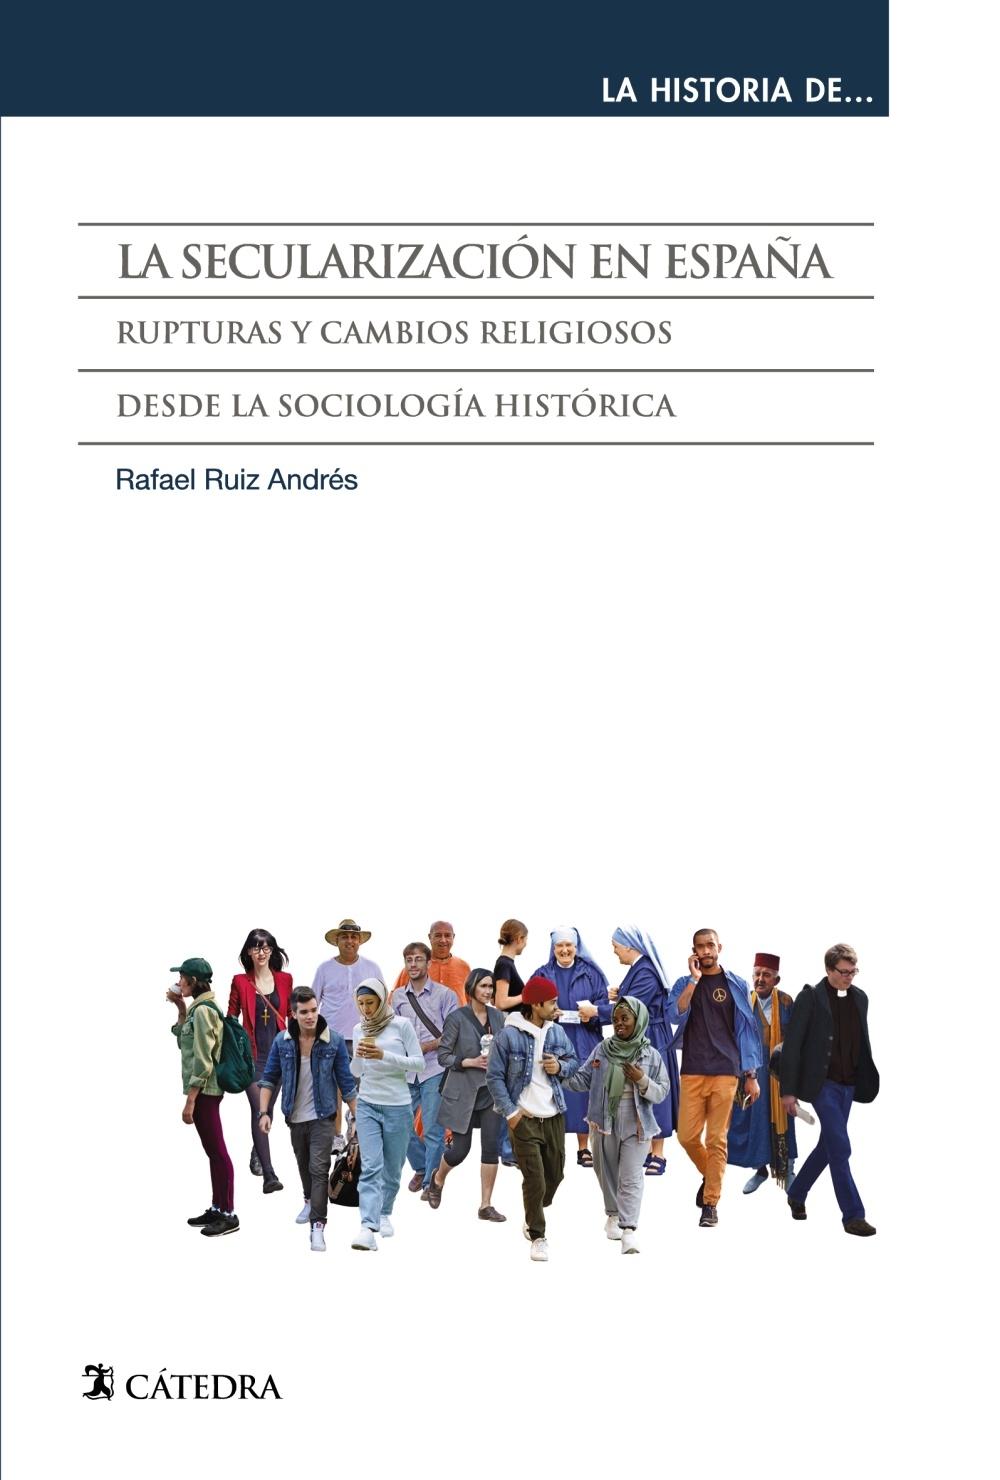 La Secularización en España "Rupturas y Cambios Religiosos desde la Sociología Histórica"